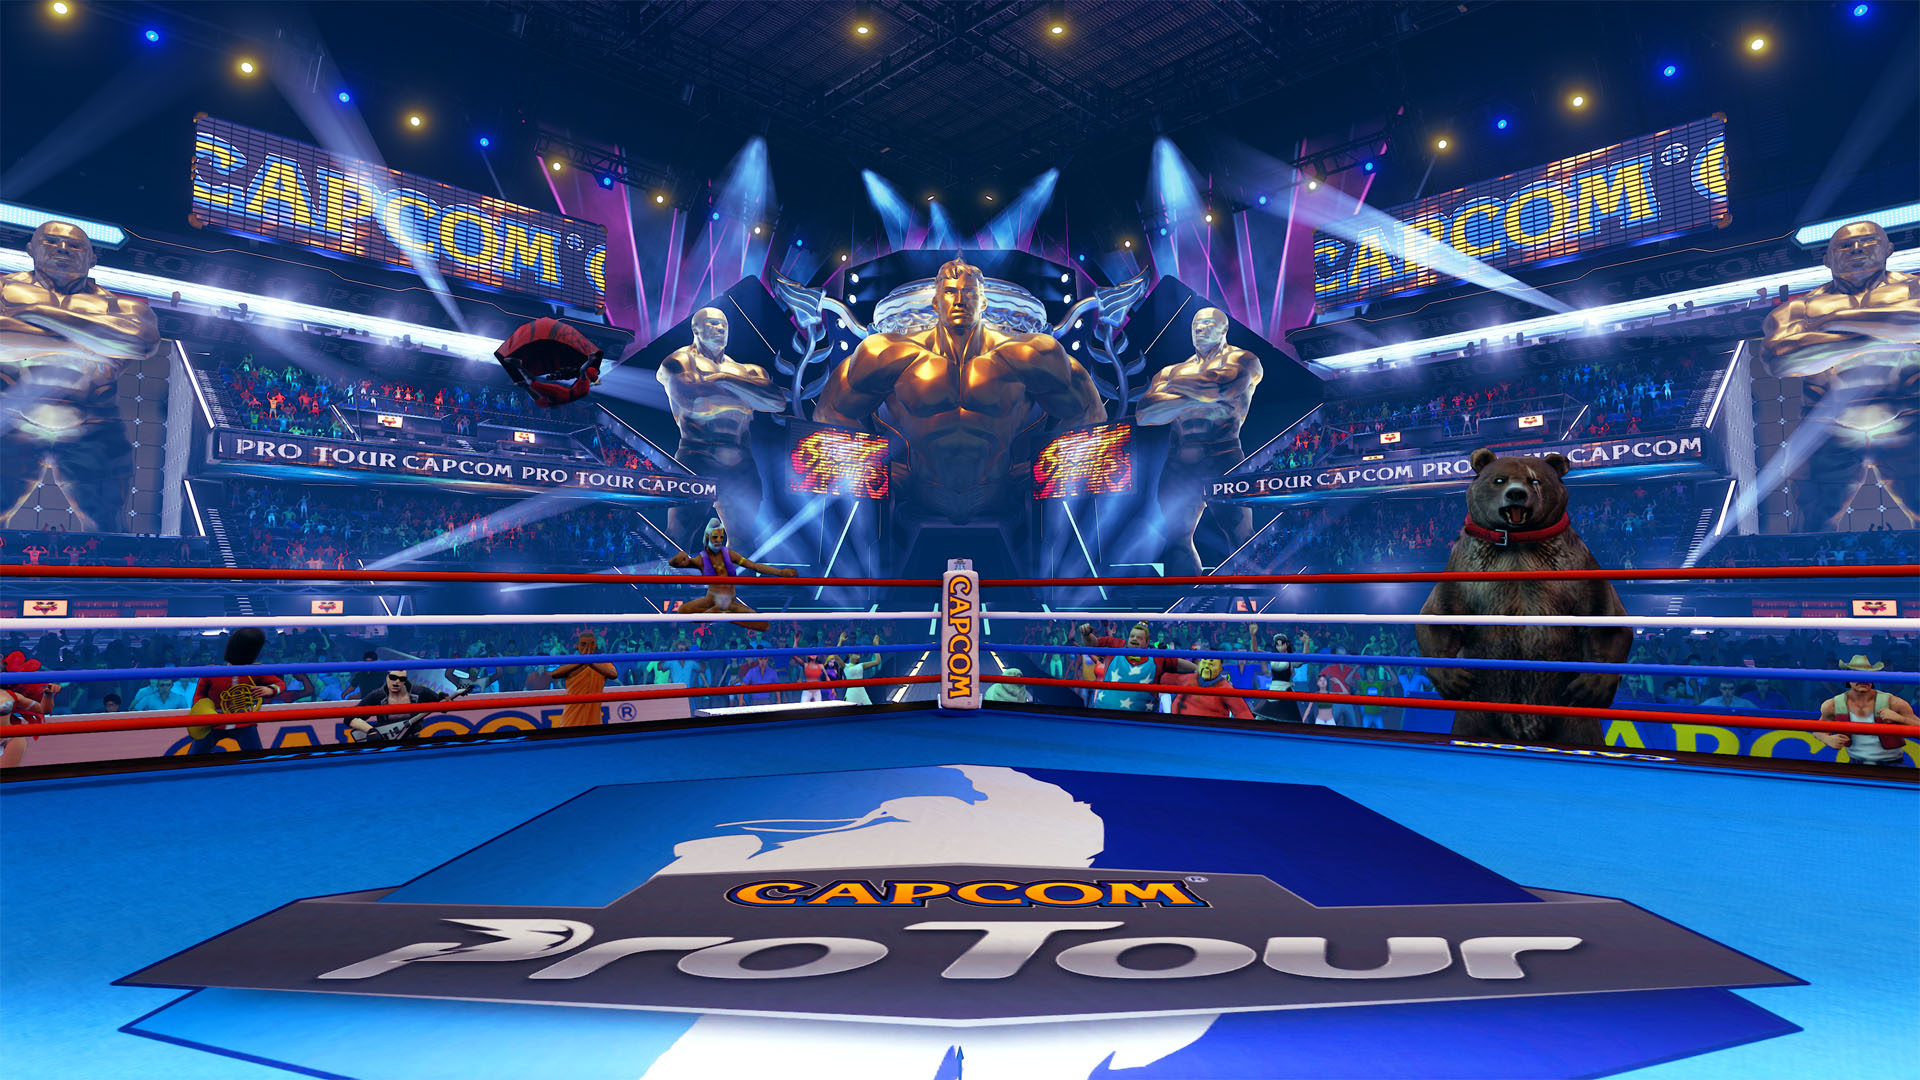 Capcom pro tour 2016 evo 2016 dlcs temporaires pour street fighter v 3